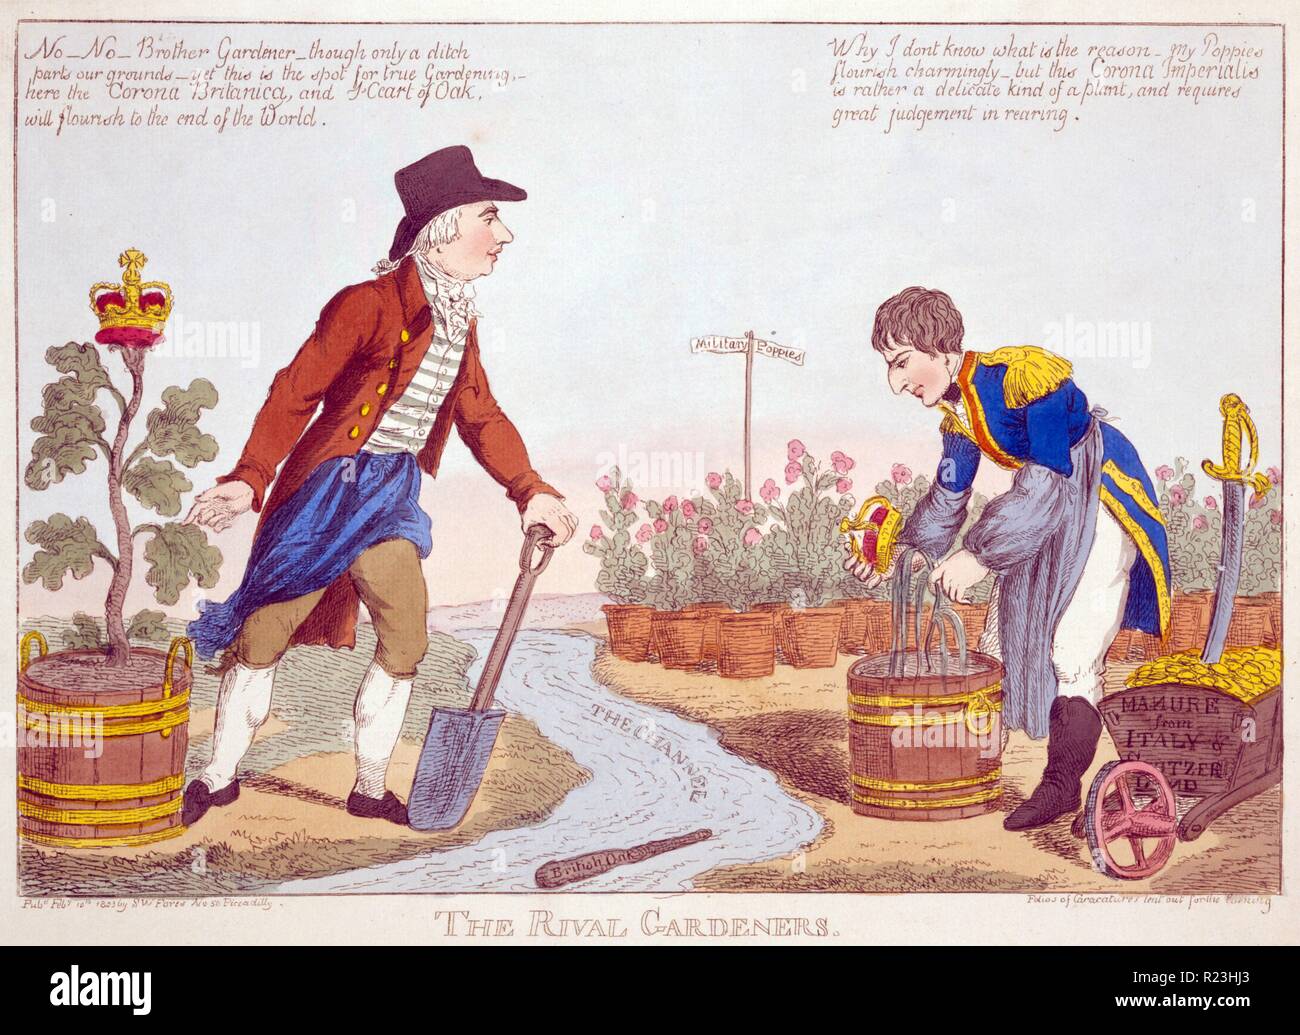 Le rival des jardiniers. Le roi George III d'Angleterre et de Napoléon, j'ai tendance à leurs usines respectives sur les côtés opposés d'un flux marqués 'le canal.' une trique marqué 'british' Chêne, il flotte. Banque D'Images